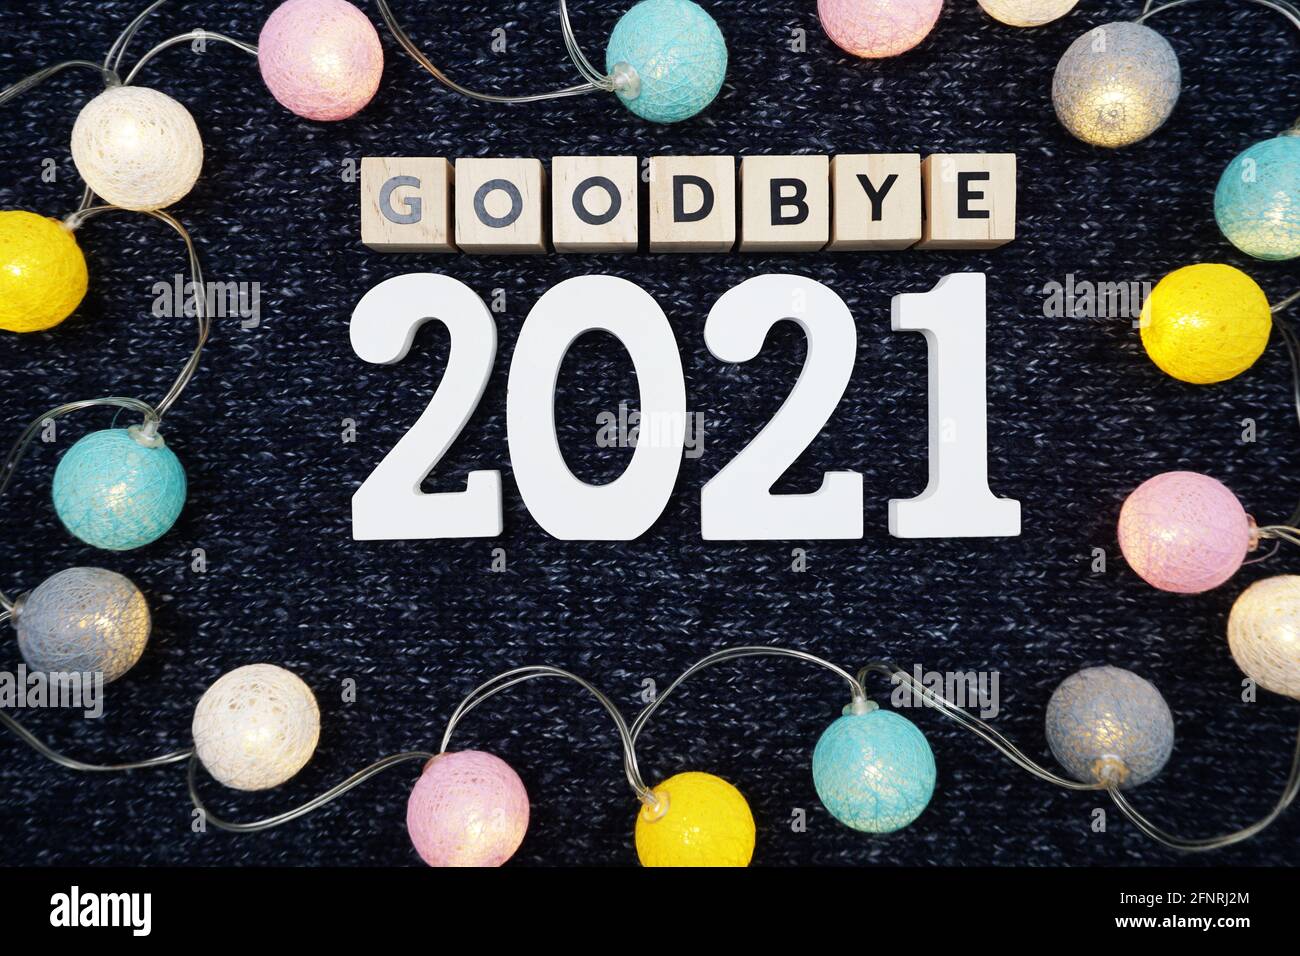 Adieu 2021 lettre de l'alphabet décorer avec boule de coton LED sur fond de tissu tricoté bleu Banque D'Images